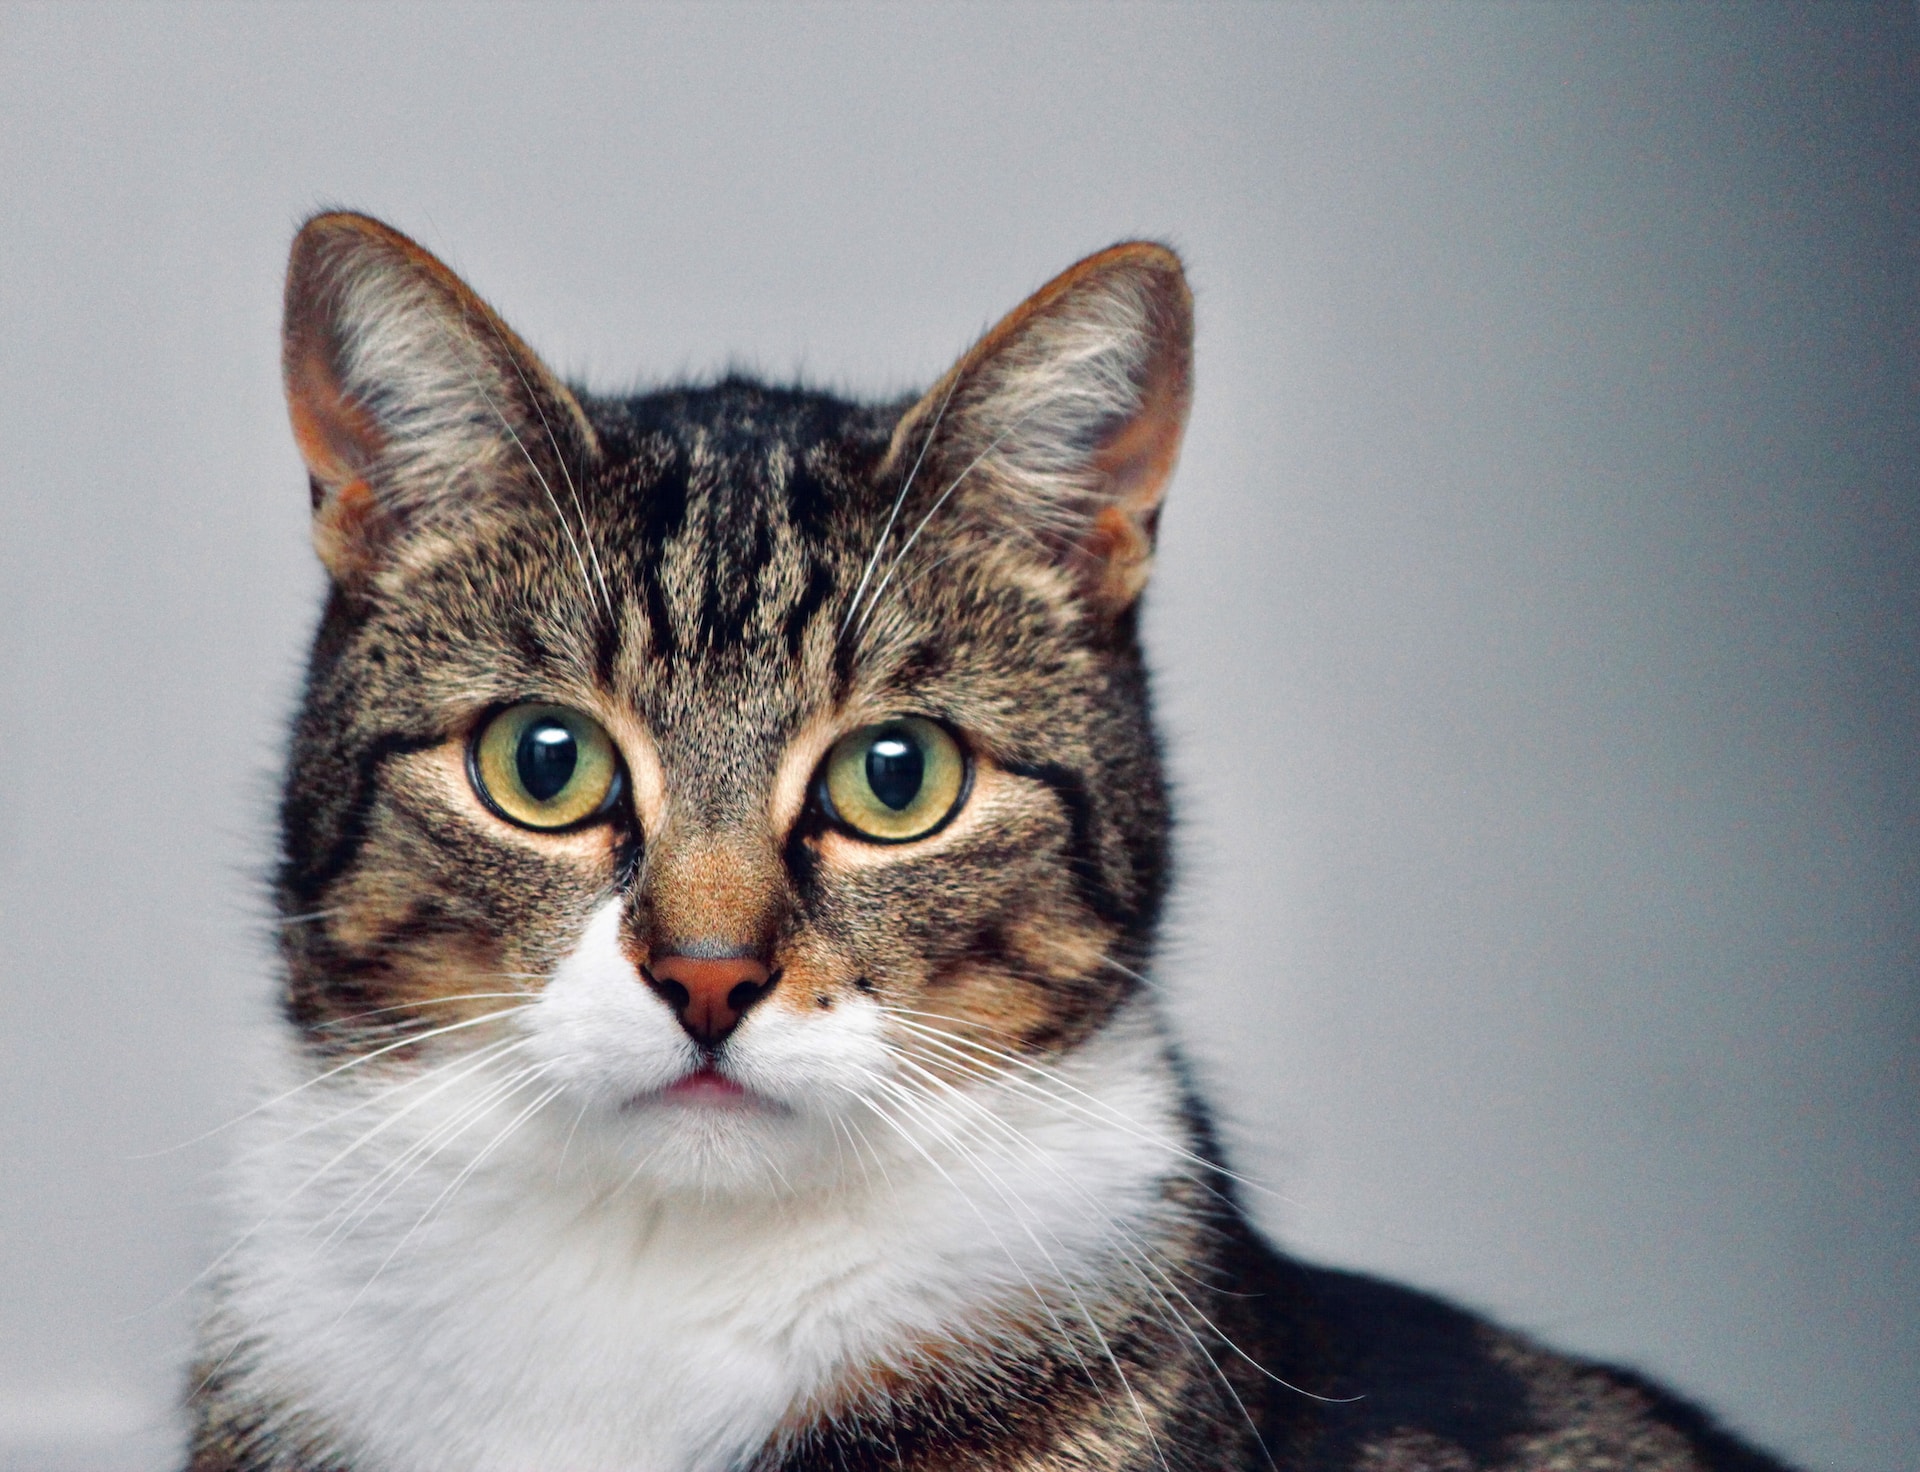 5 erstaunliche Fakten, die du vielleicht nicht über Katzen weißt